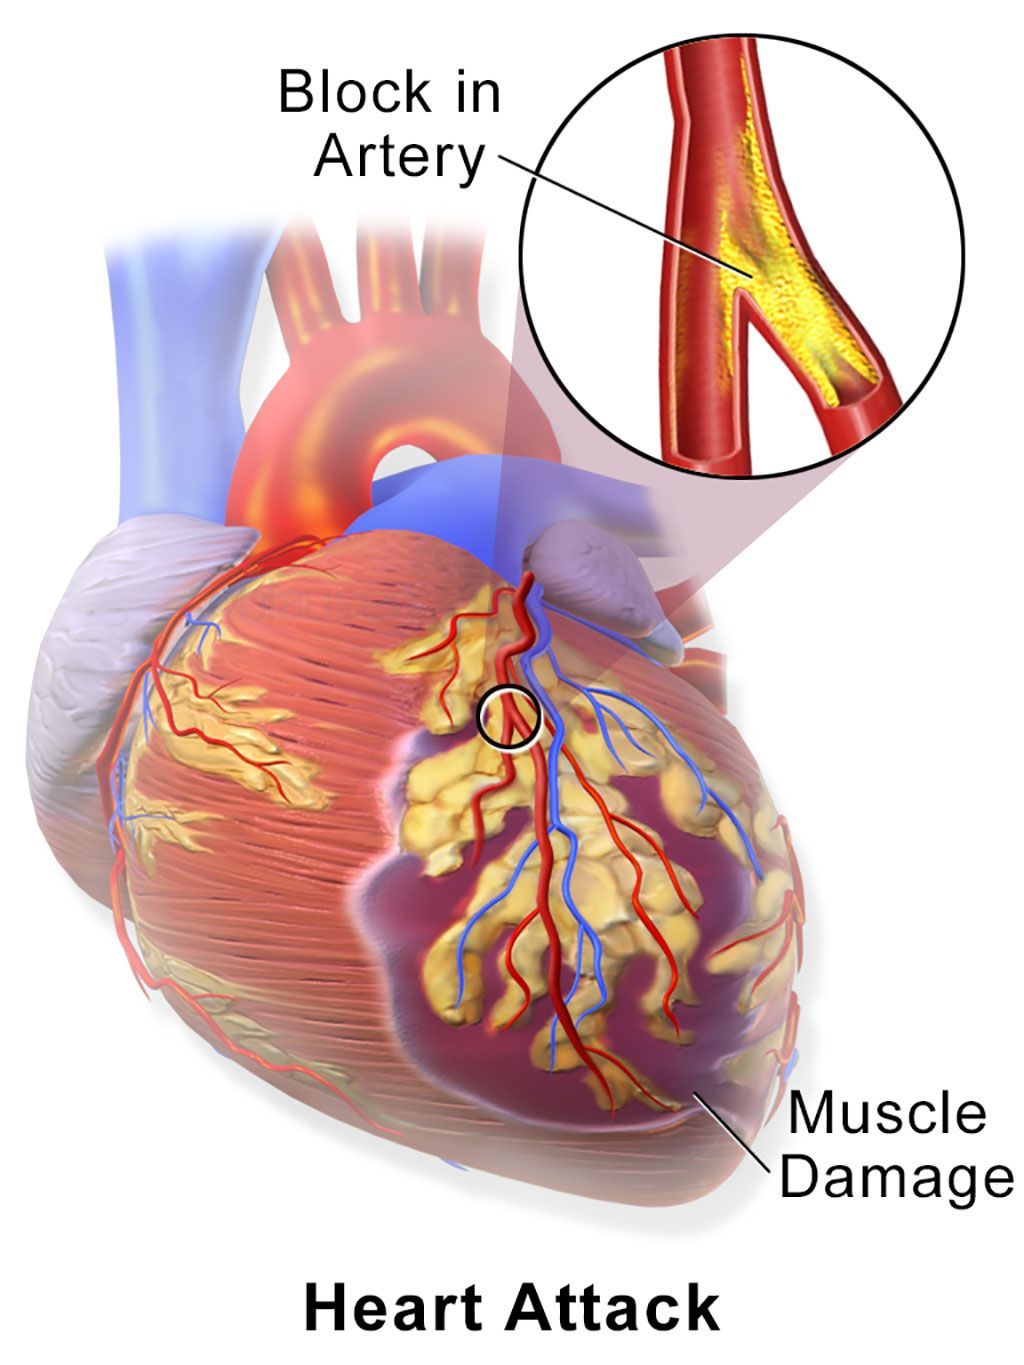 Imagen: Un infarto de miocardio (IM), comúnmente conocido como ataque cardíaco, ocurre cuando el flujo sanguíneo disminuye o se detiene en una parte del corazón, causando daño al músculo cardíaco (Fotografía cortesía de Wikimedia Commons).